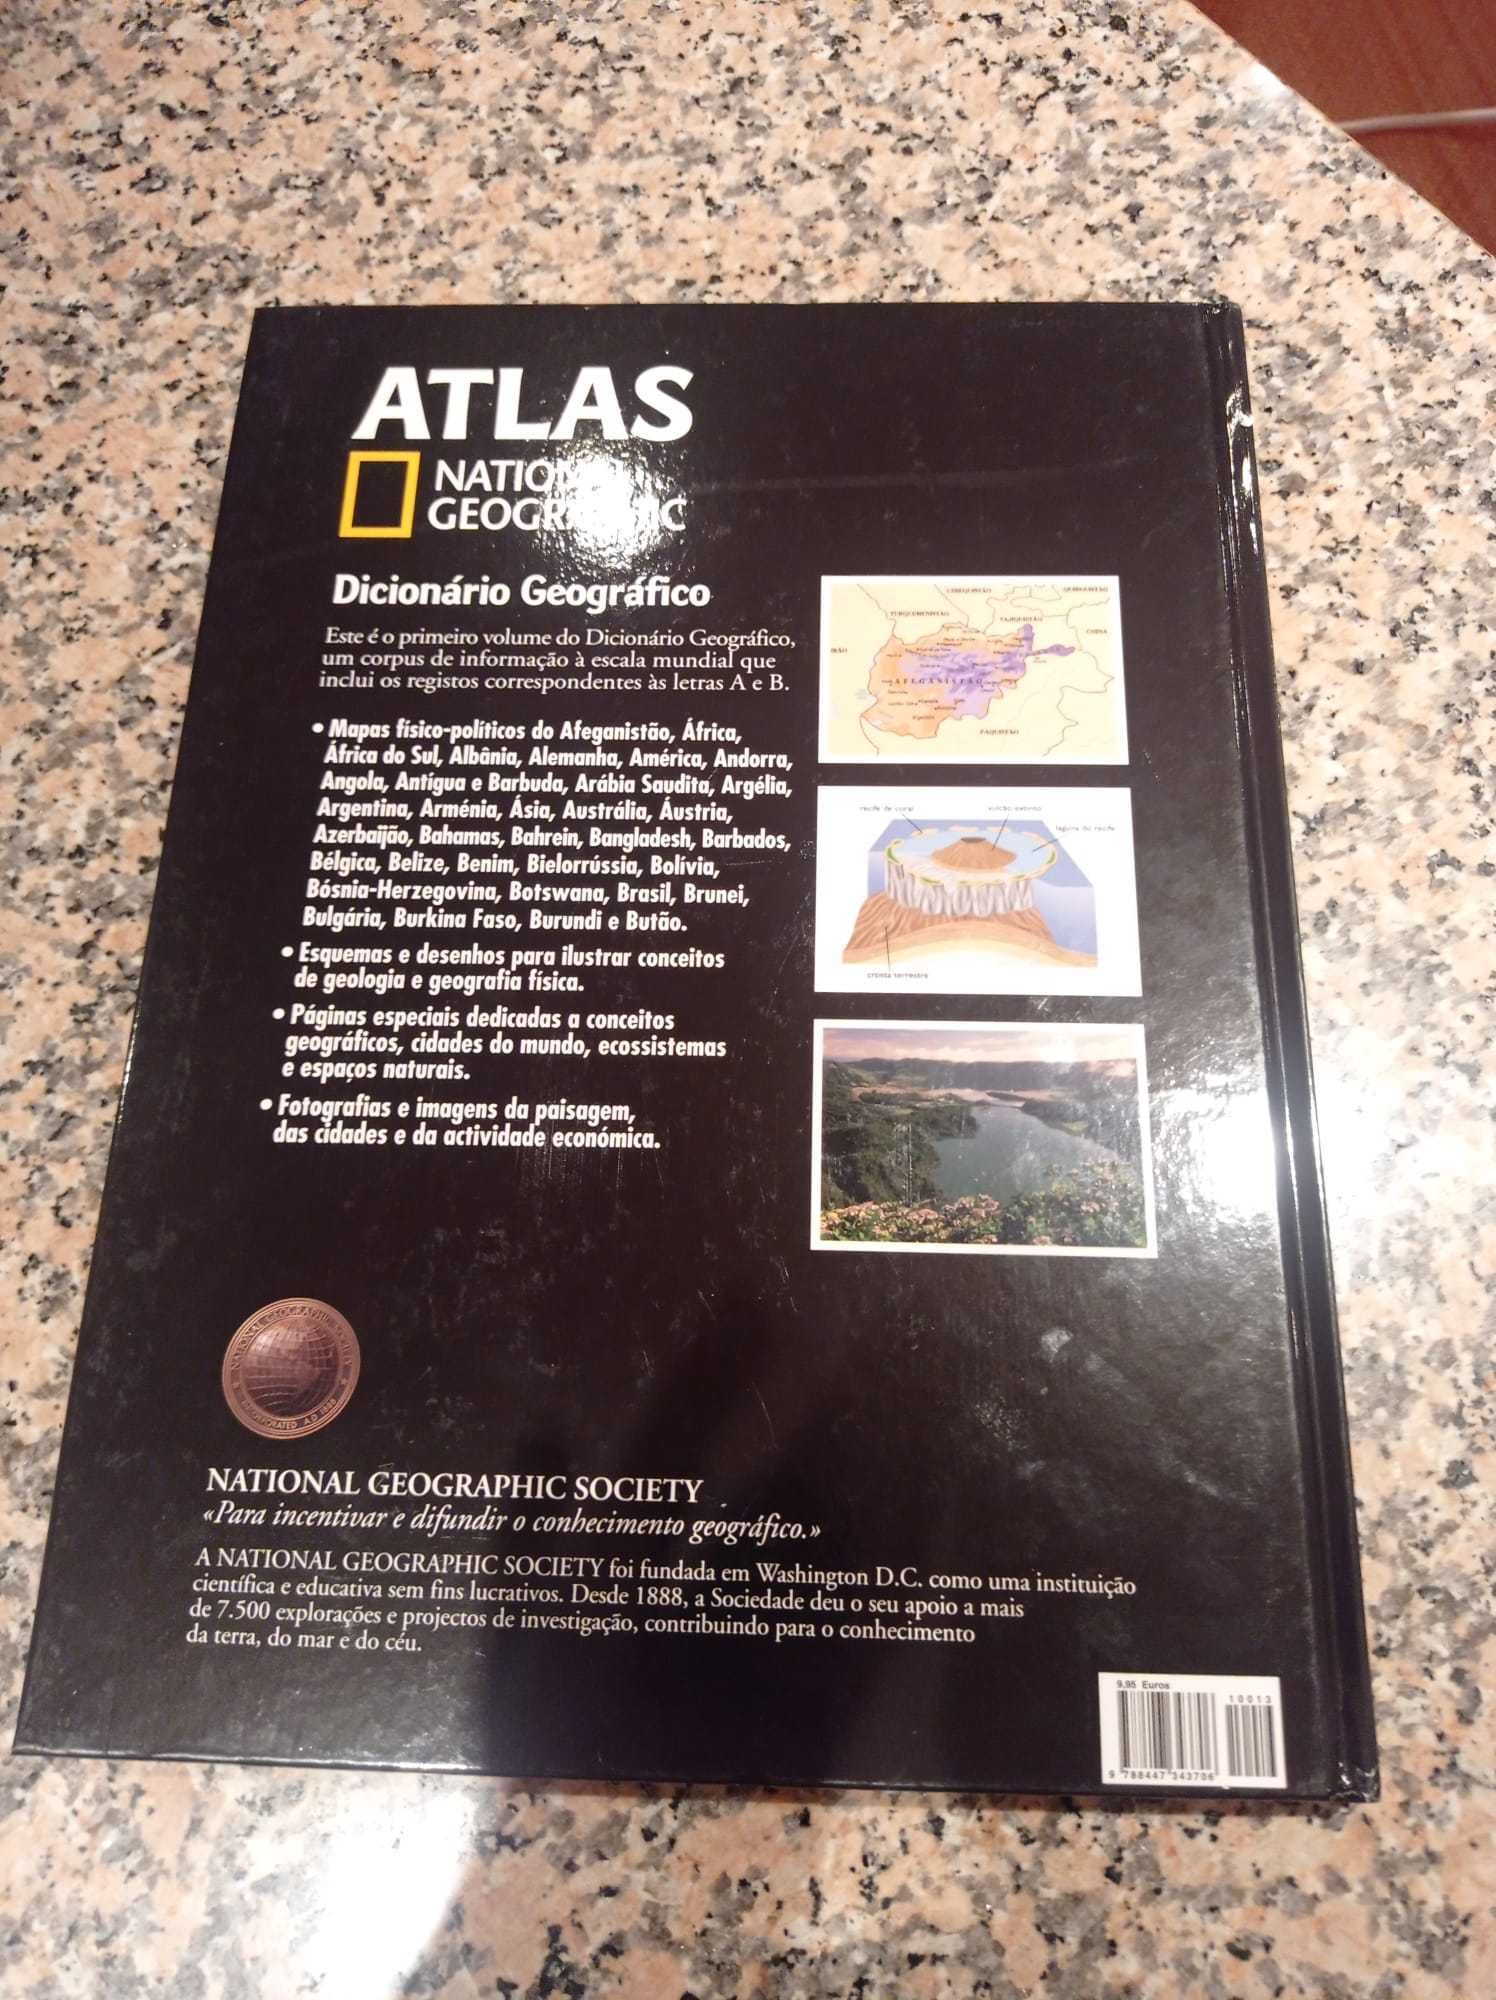 Atlas dicionário geográfico, National Geographic